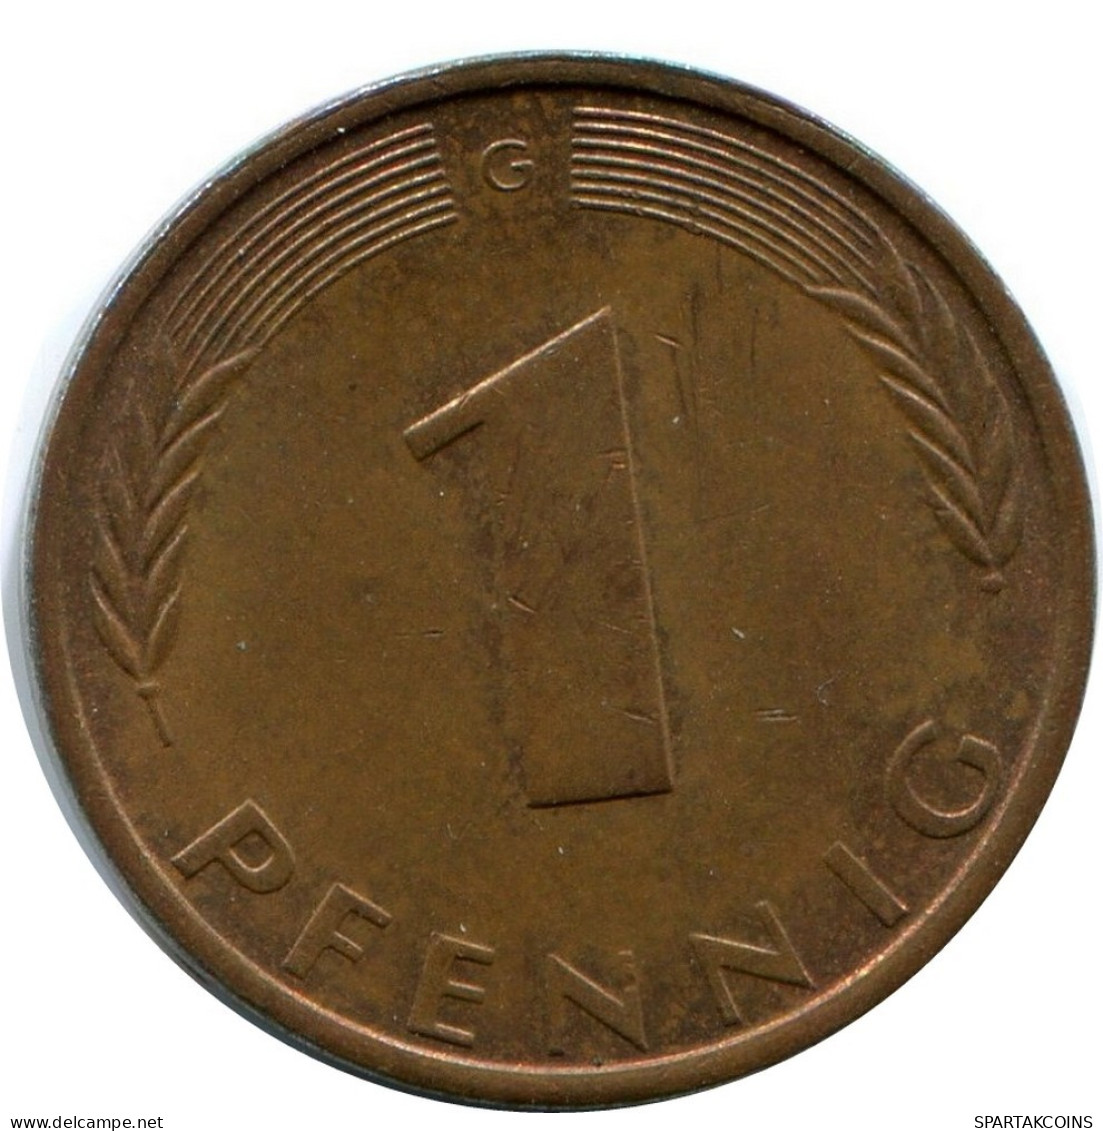 1 PFENNIG 1971 G WEST & UNIFIED GERMANY Coin #AW961.U.A - 1 Pfennig